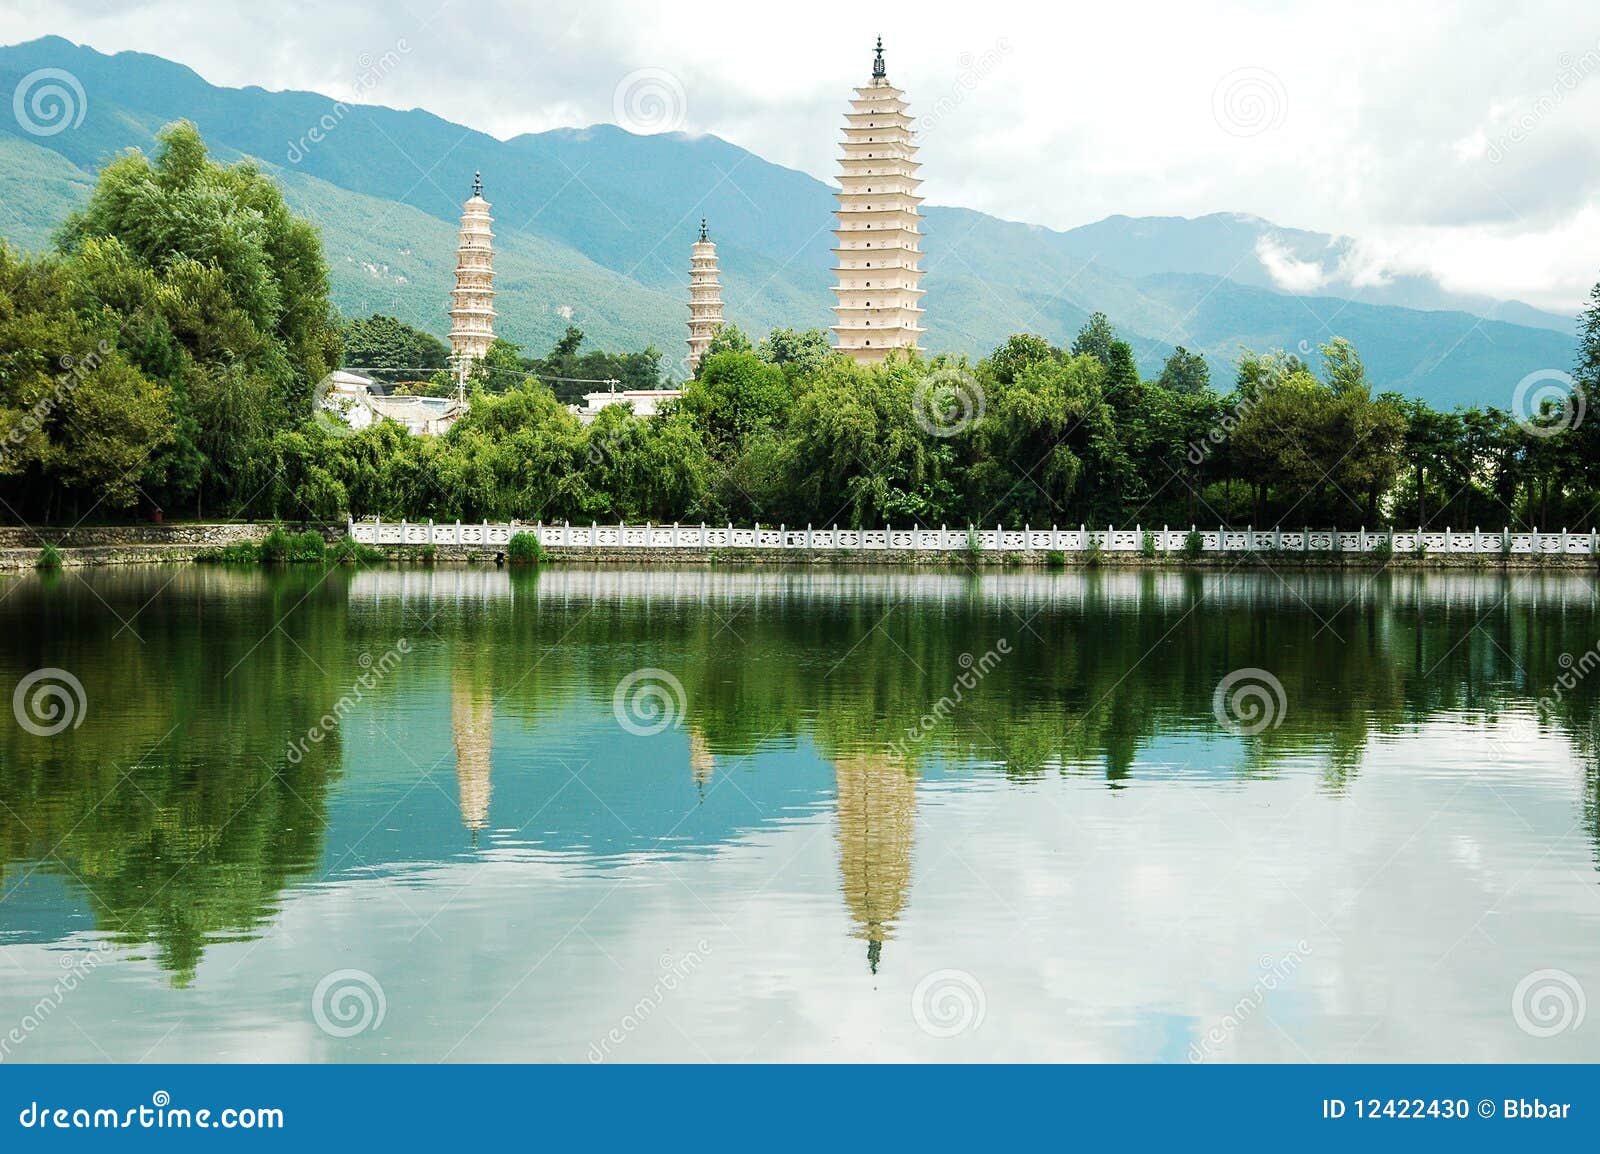 three pagodas in dali